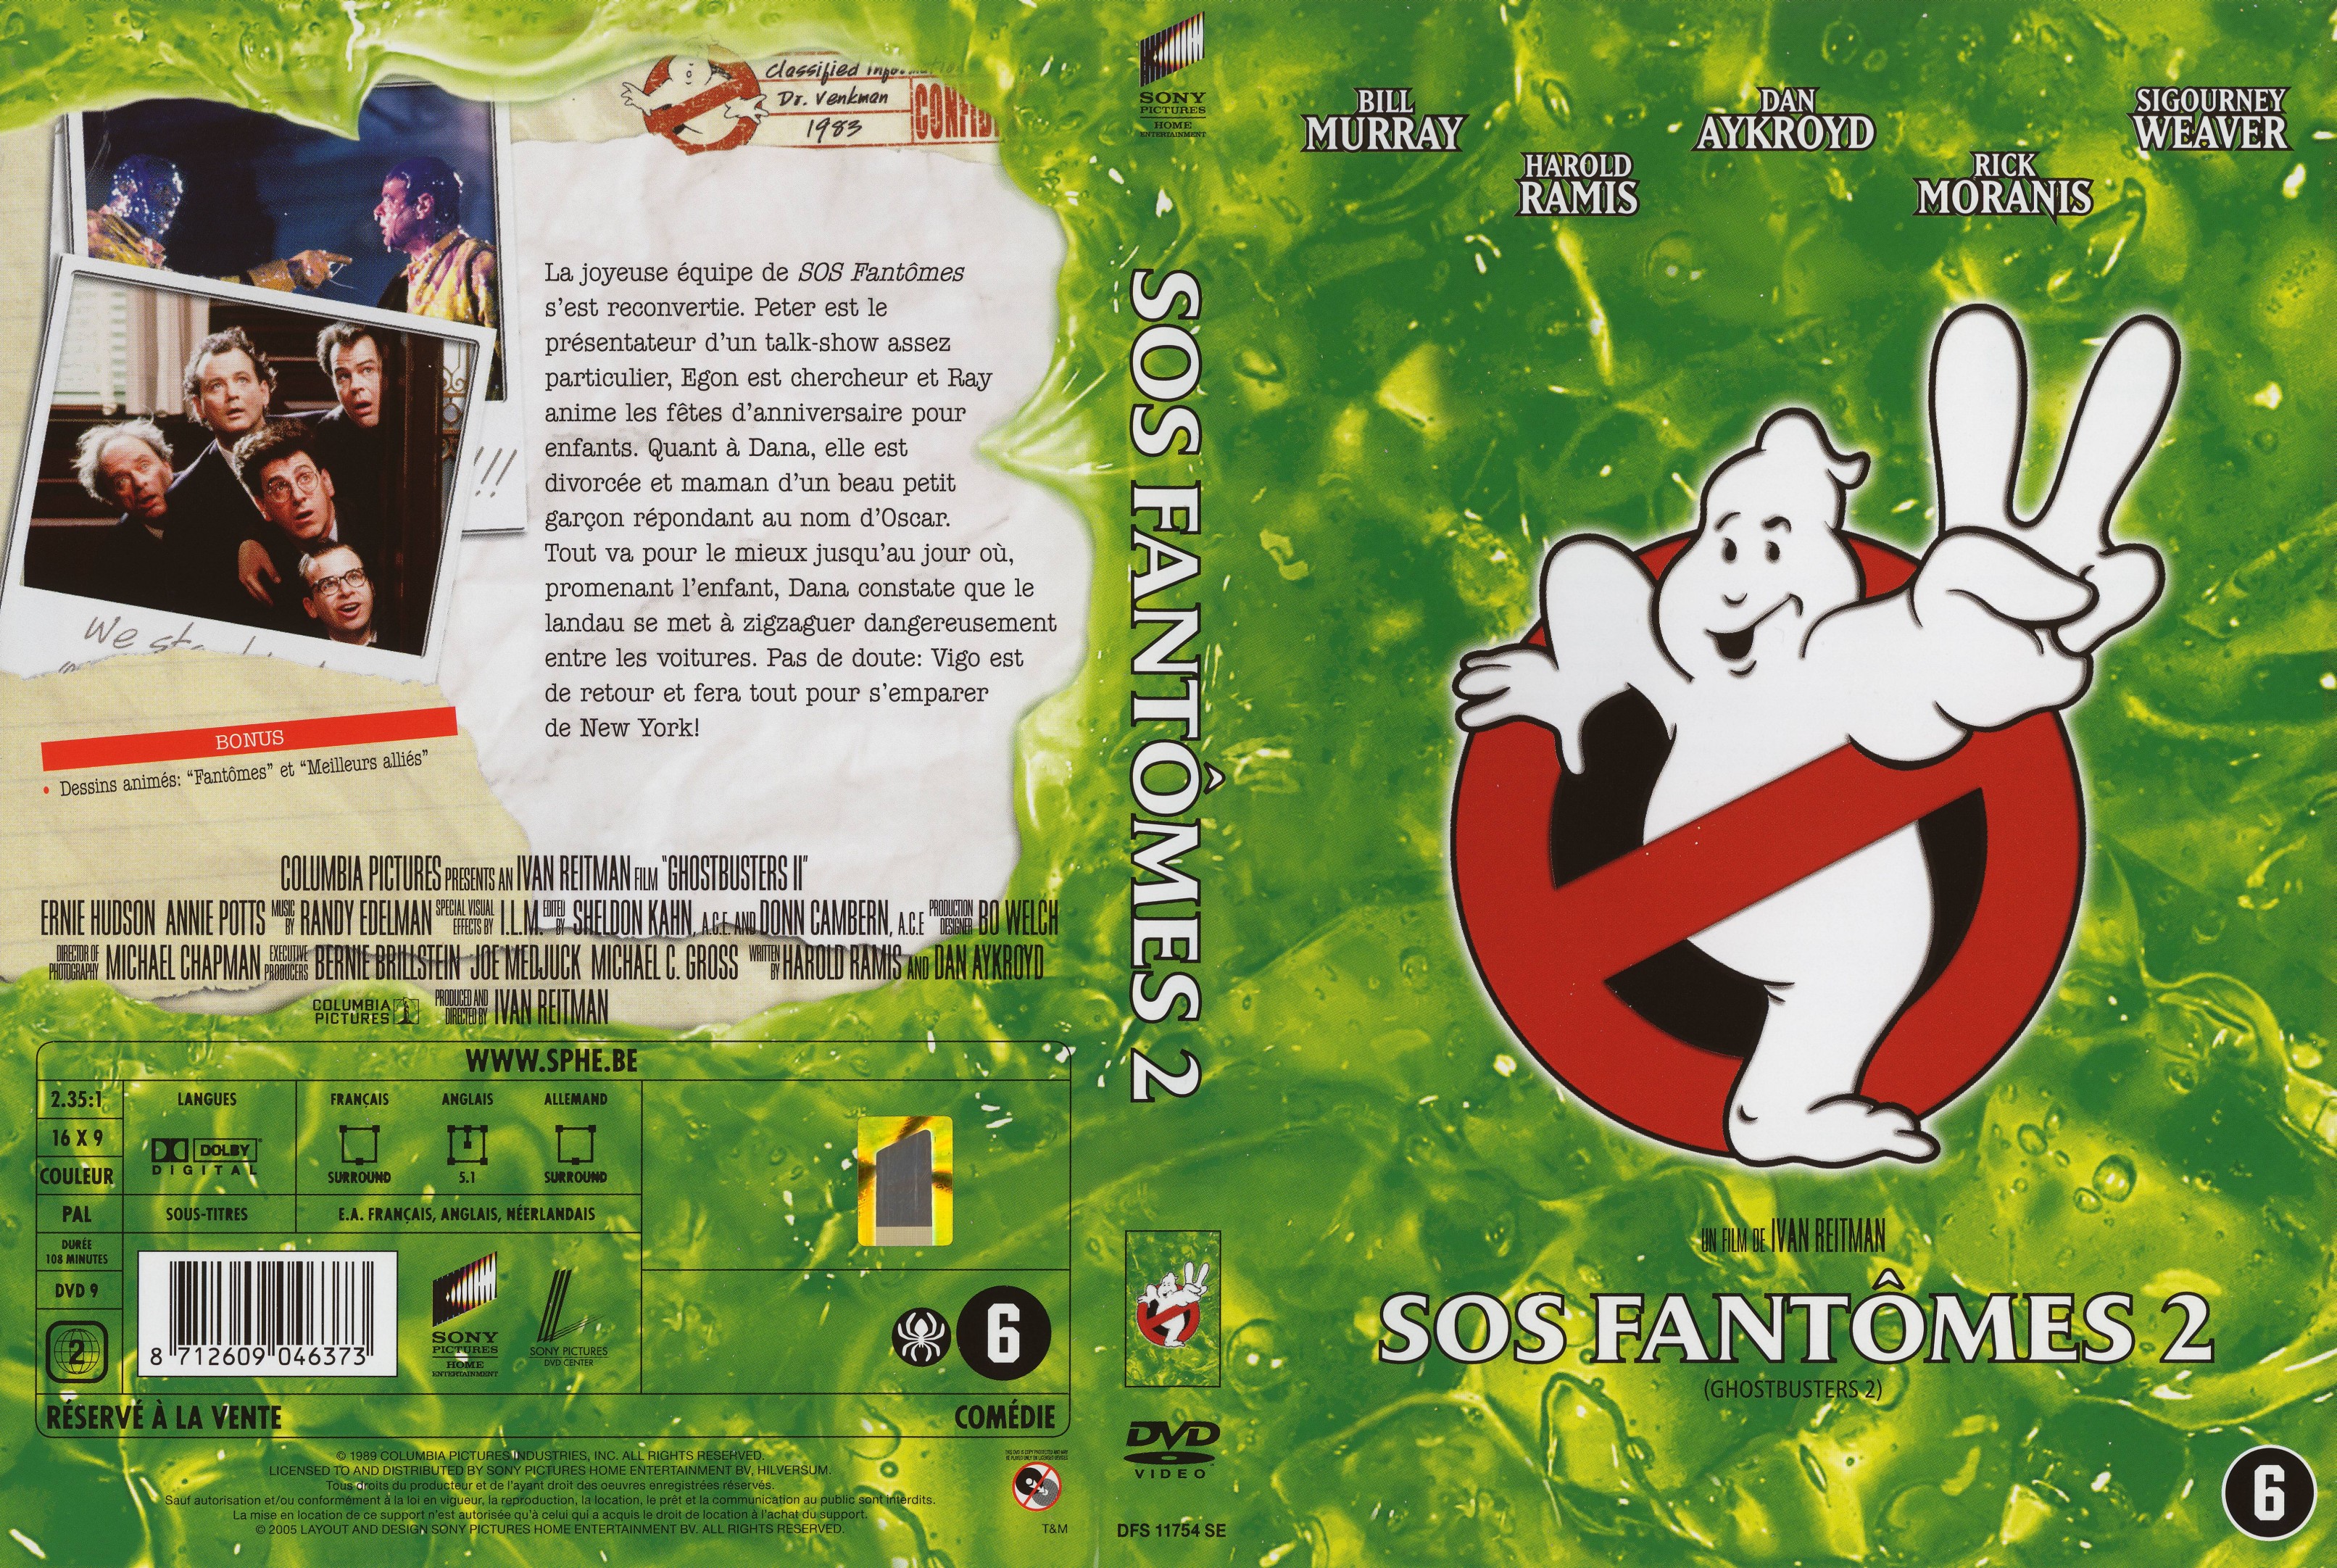 Jaquette DVD SOS fantomes 2